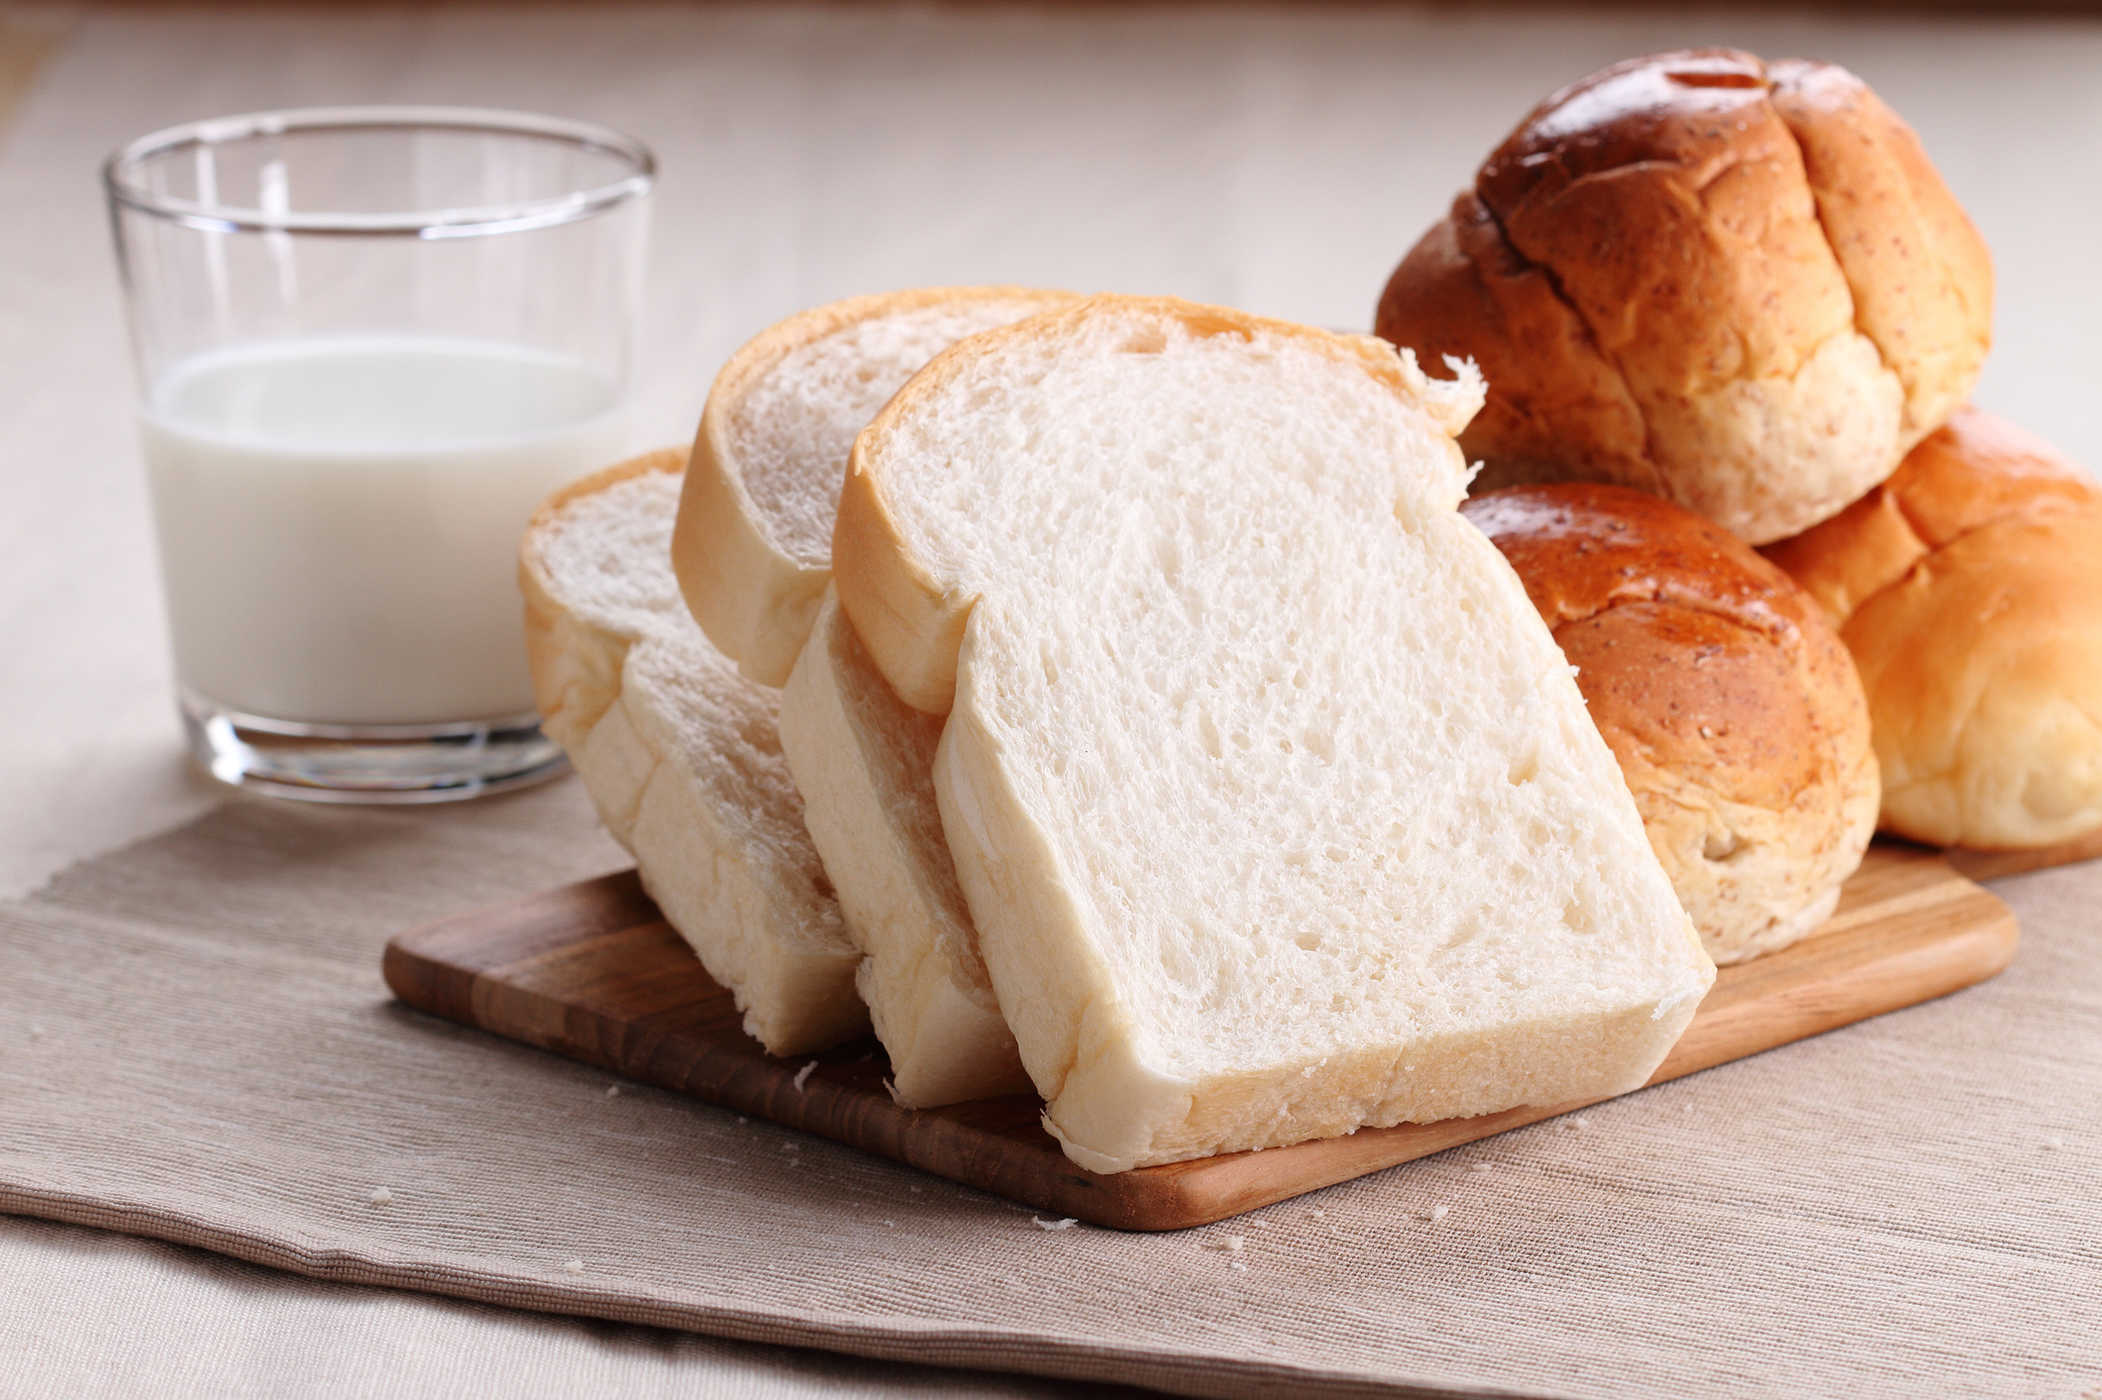   Bánh mỳ trắng là thực phẩm gây tăng cân, nhất là vùng eo  